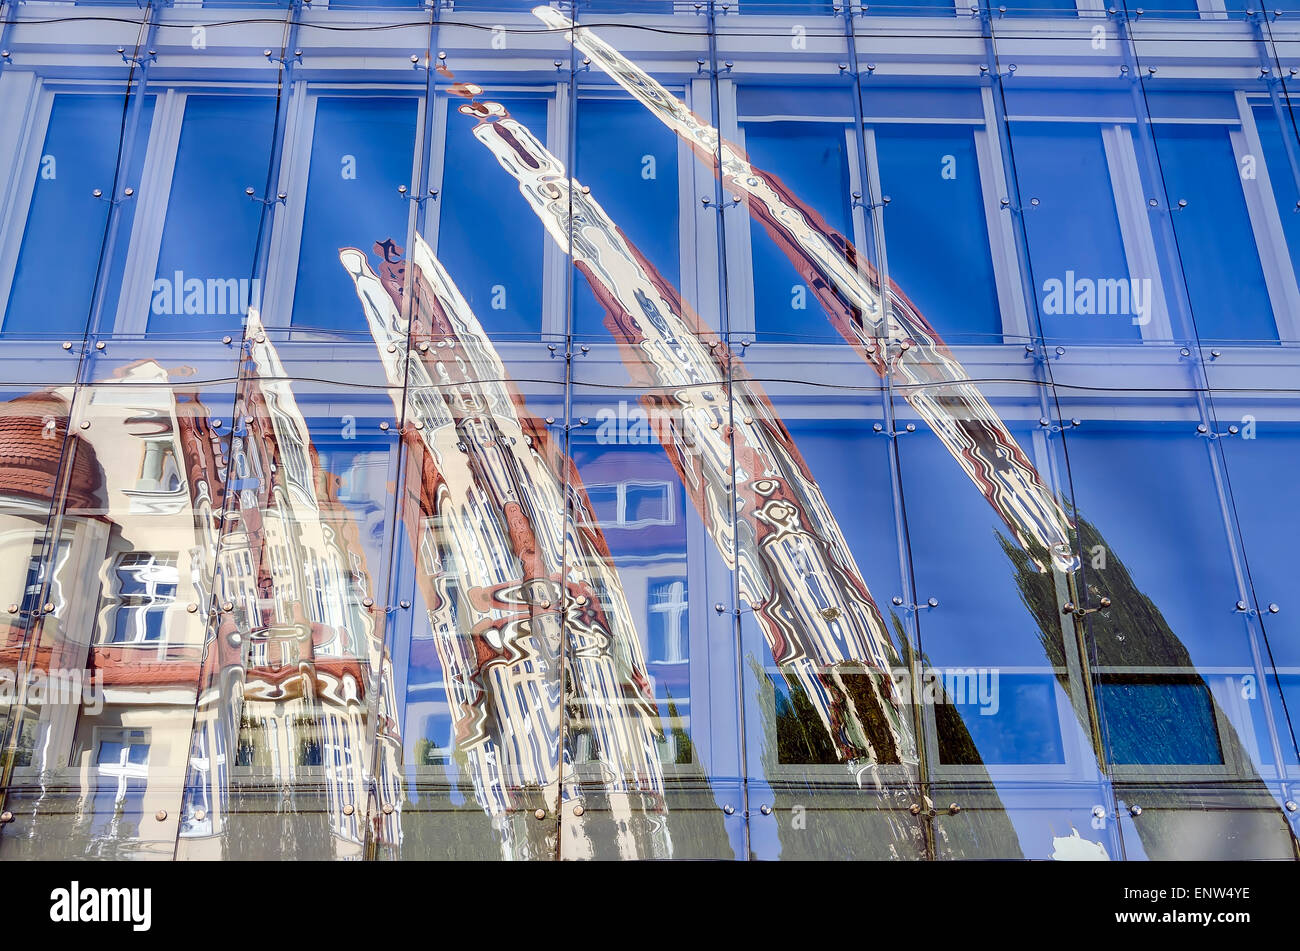 La fenêtre des modèles futuristes Réflexions Sopot Pologne Banque D'Images